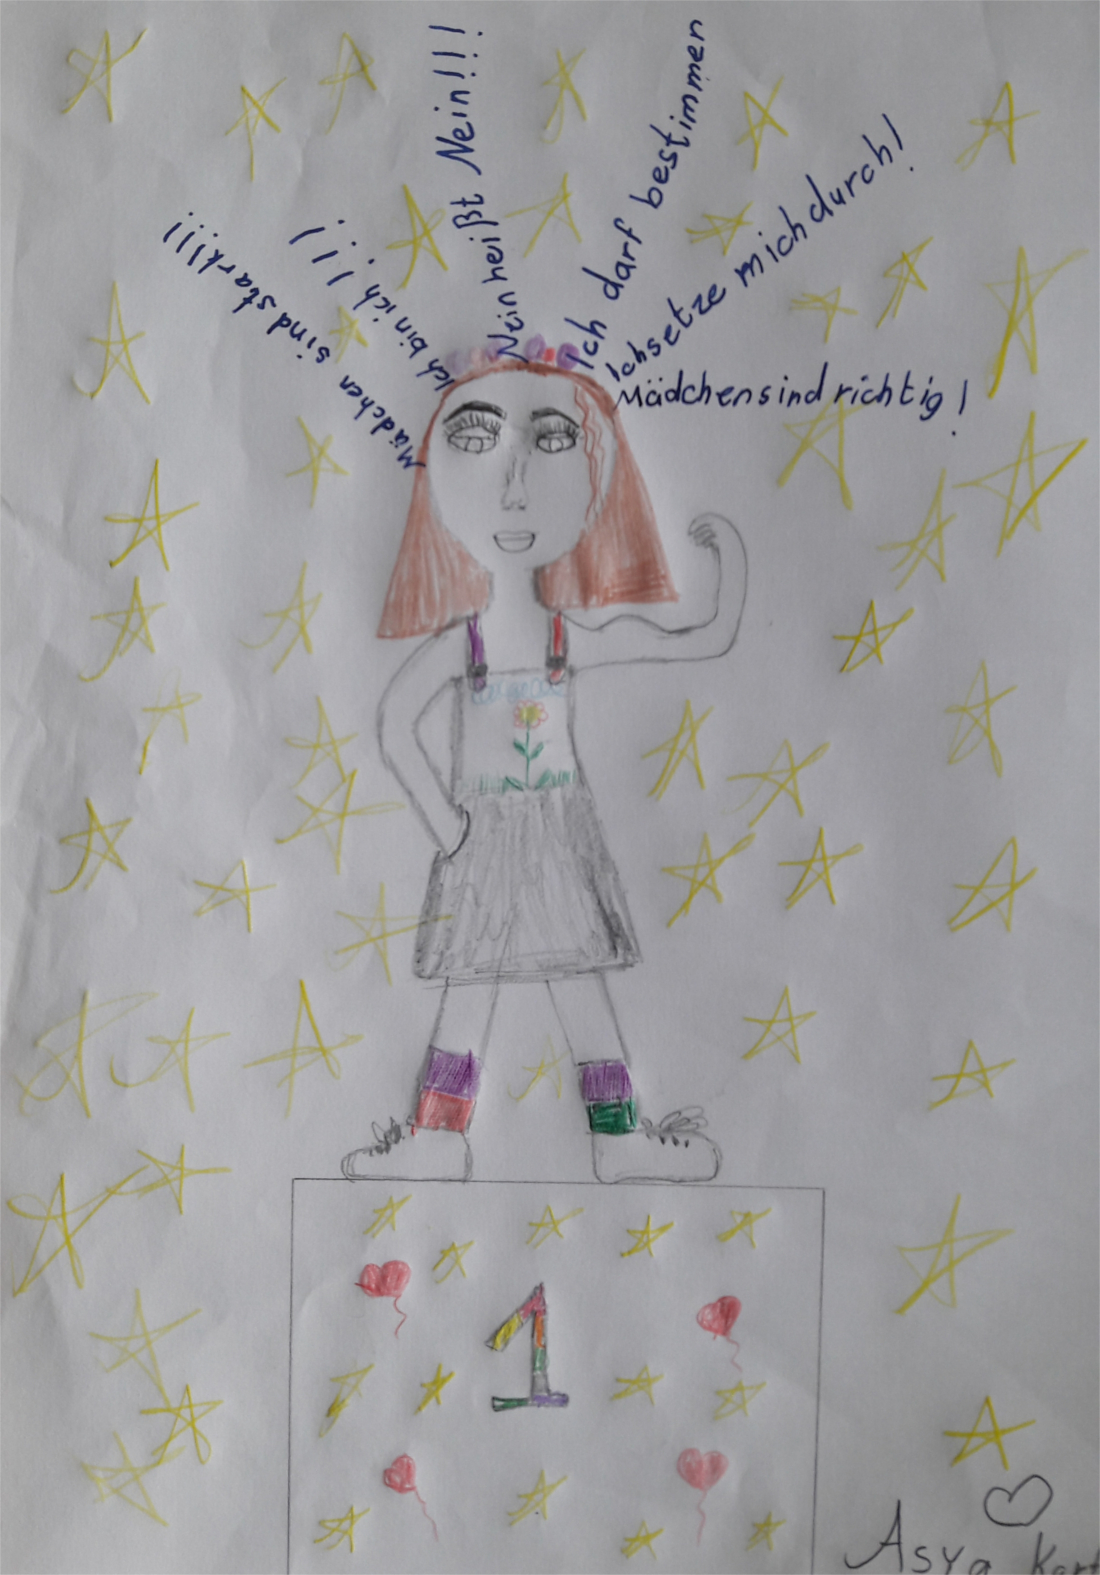 Selbstgemaltes Bild von einem Mädchen anlässlich des Weltmädchentages.